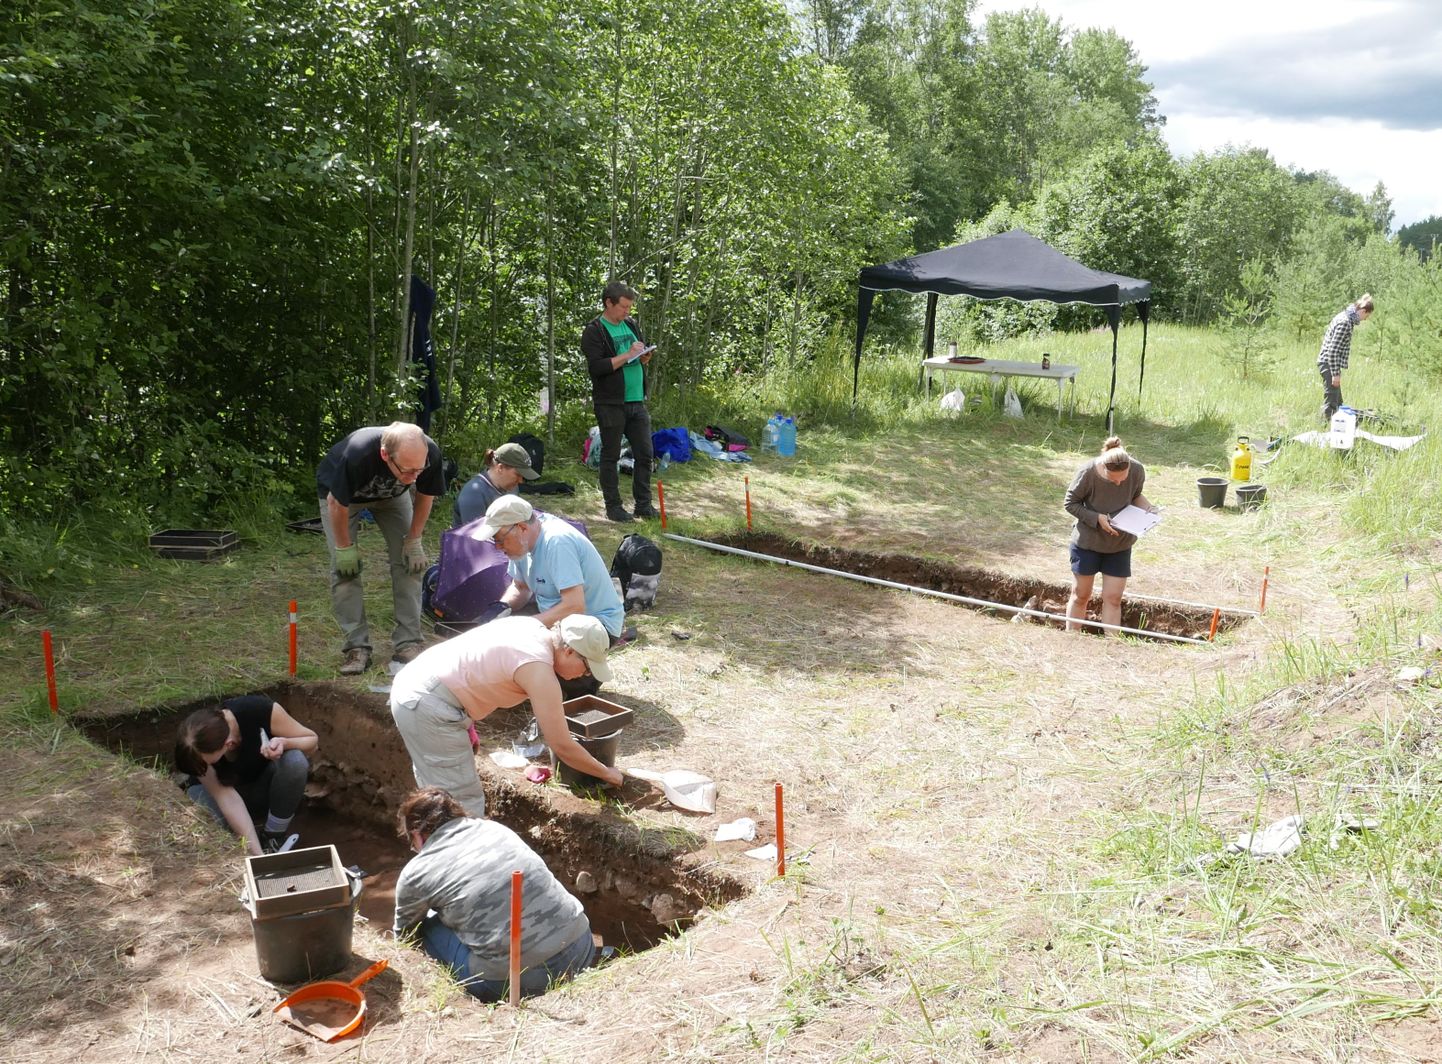 Arheoloogilised kaevamised Riigikülas. Rohelises särgis seisab doktor Kerkko Nordqvist Helsingi ülikoolist, kaevajad on aga peamiselt Soome harrastusarheoloogid ühendusest Ango.